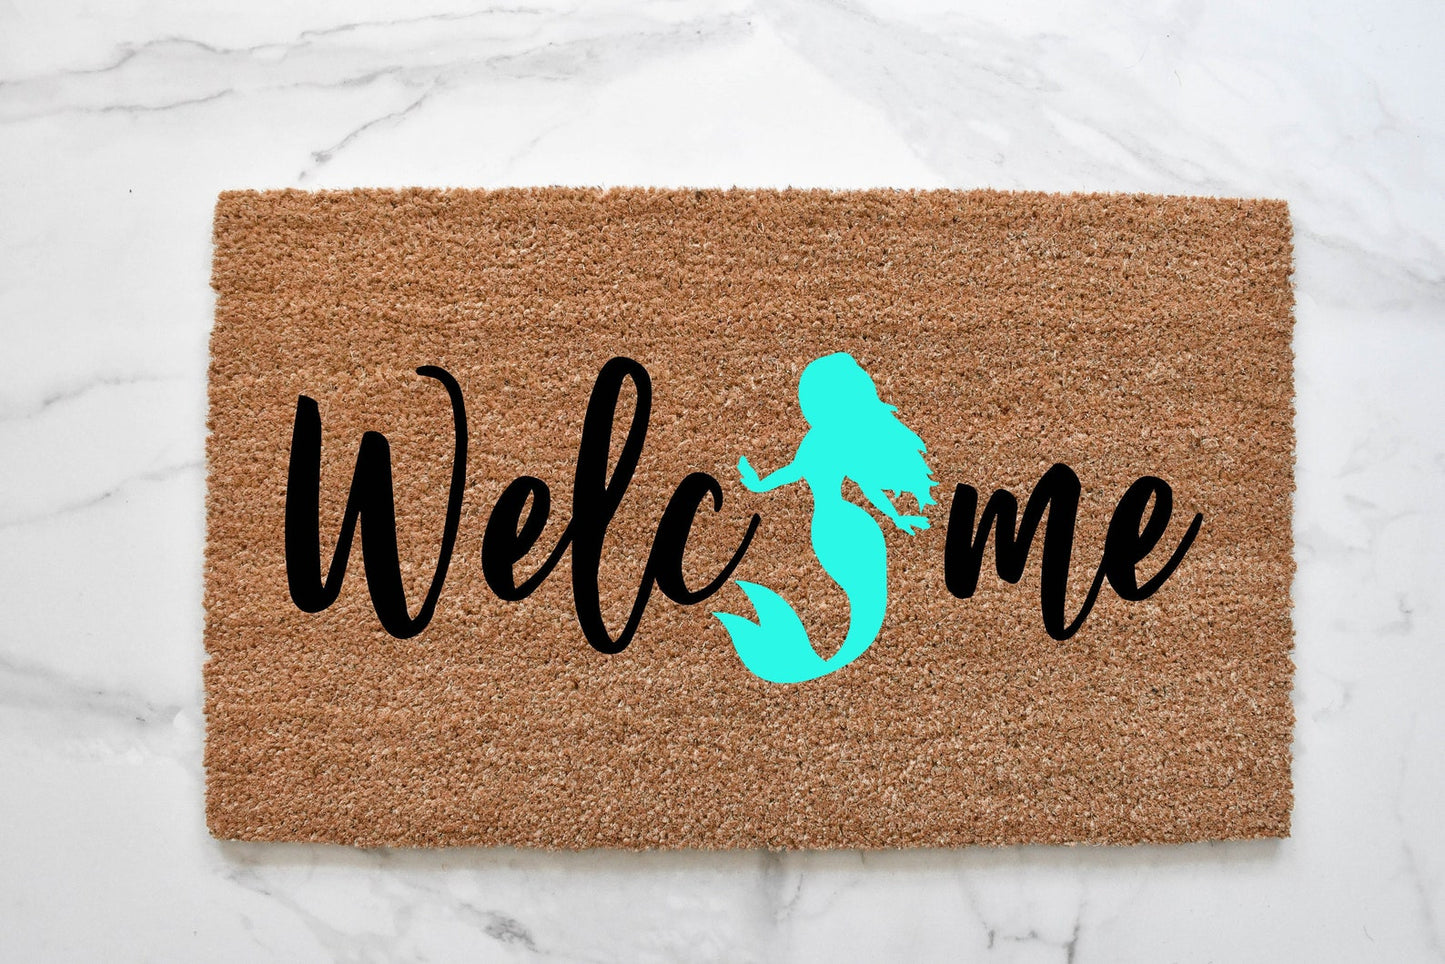 Welcome + Mermaid Doormat